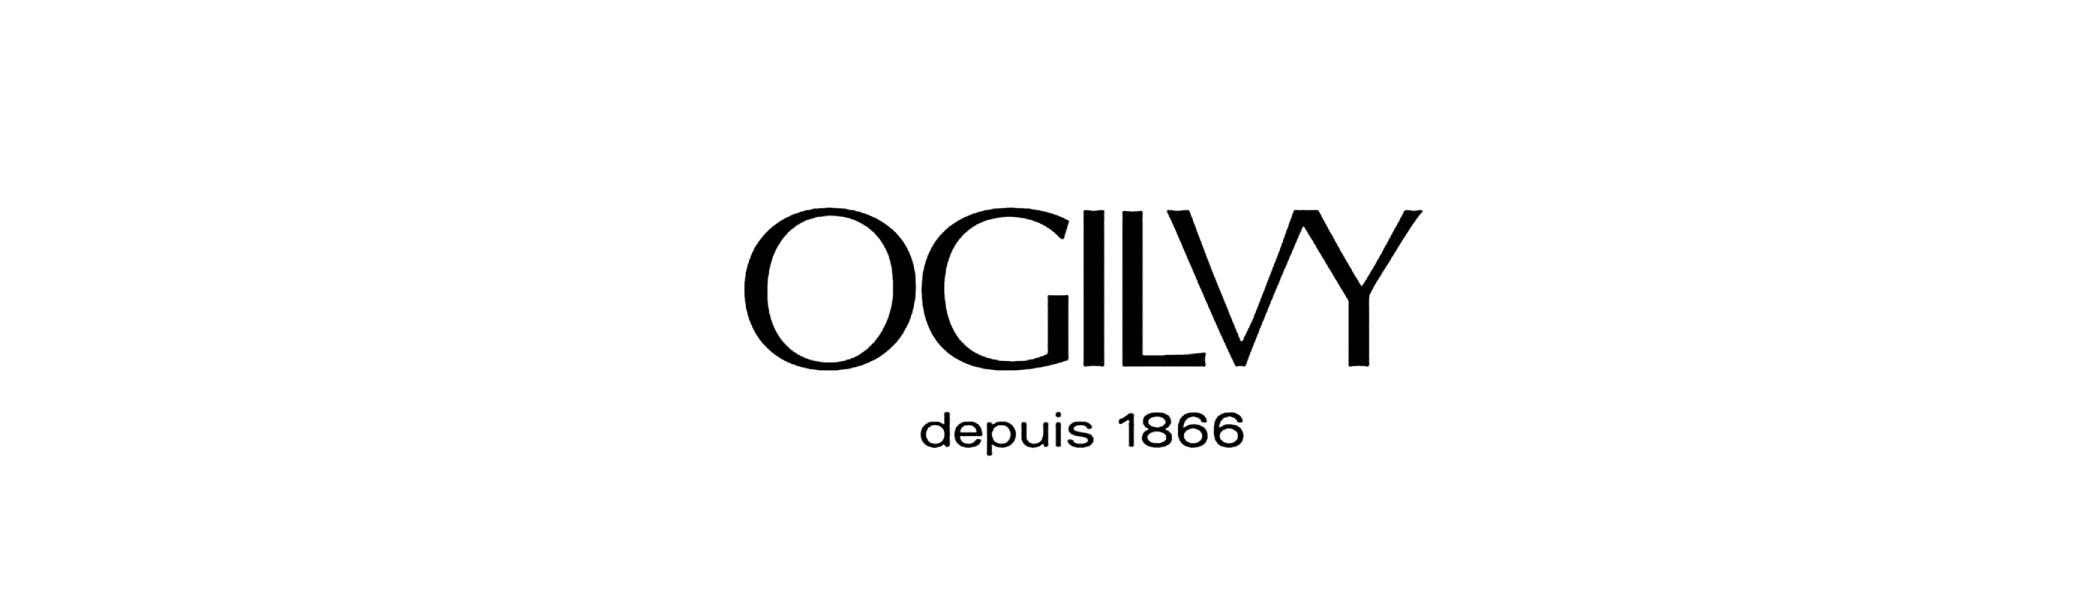 Ogilvy Logo - Ogilvy Logos